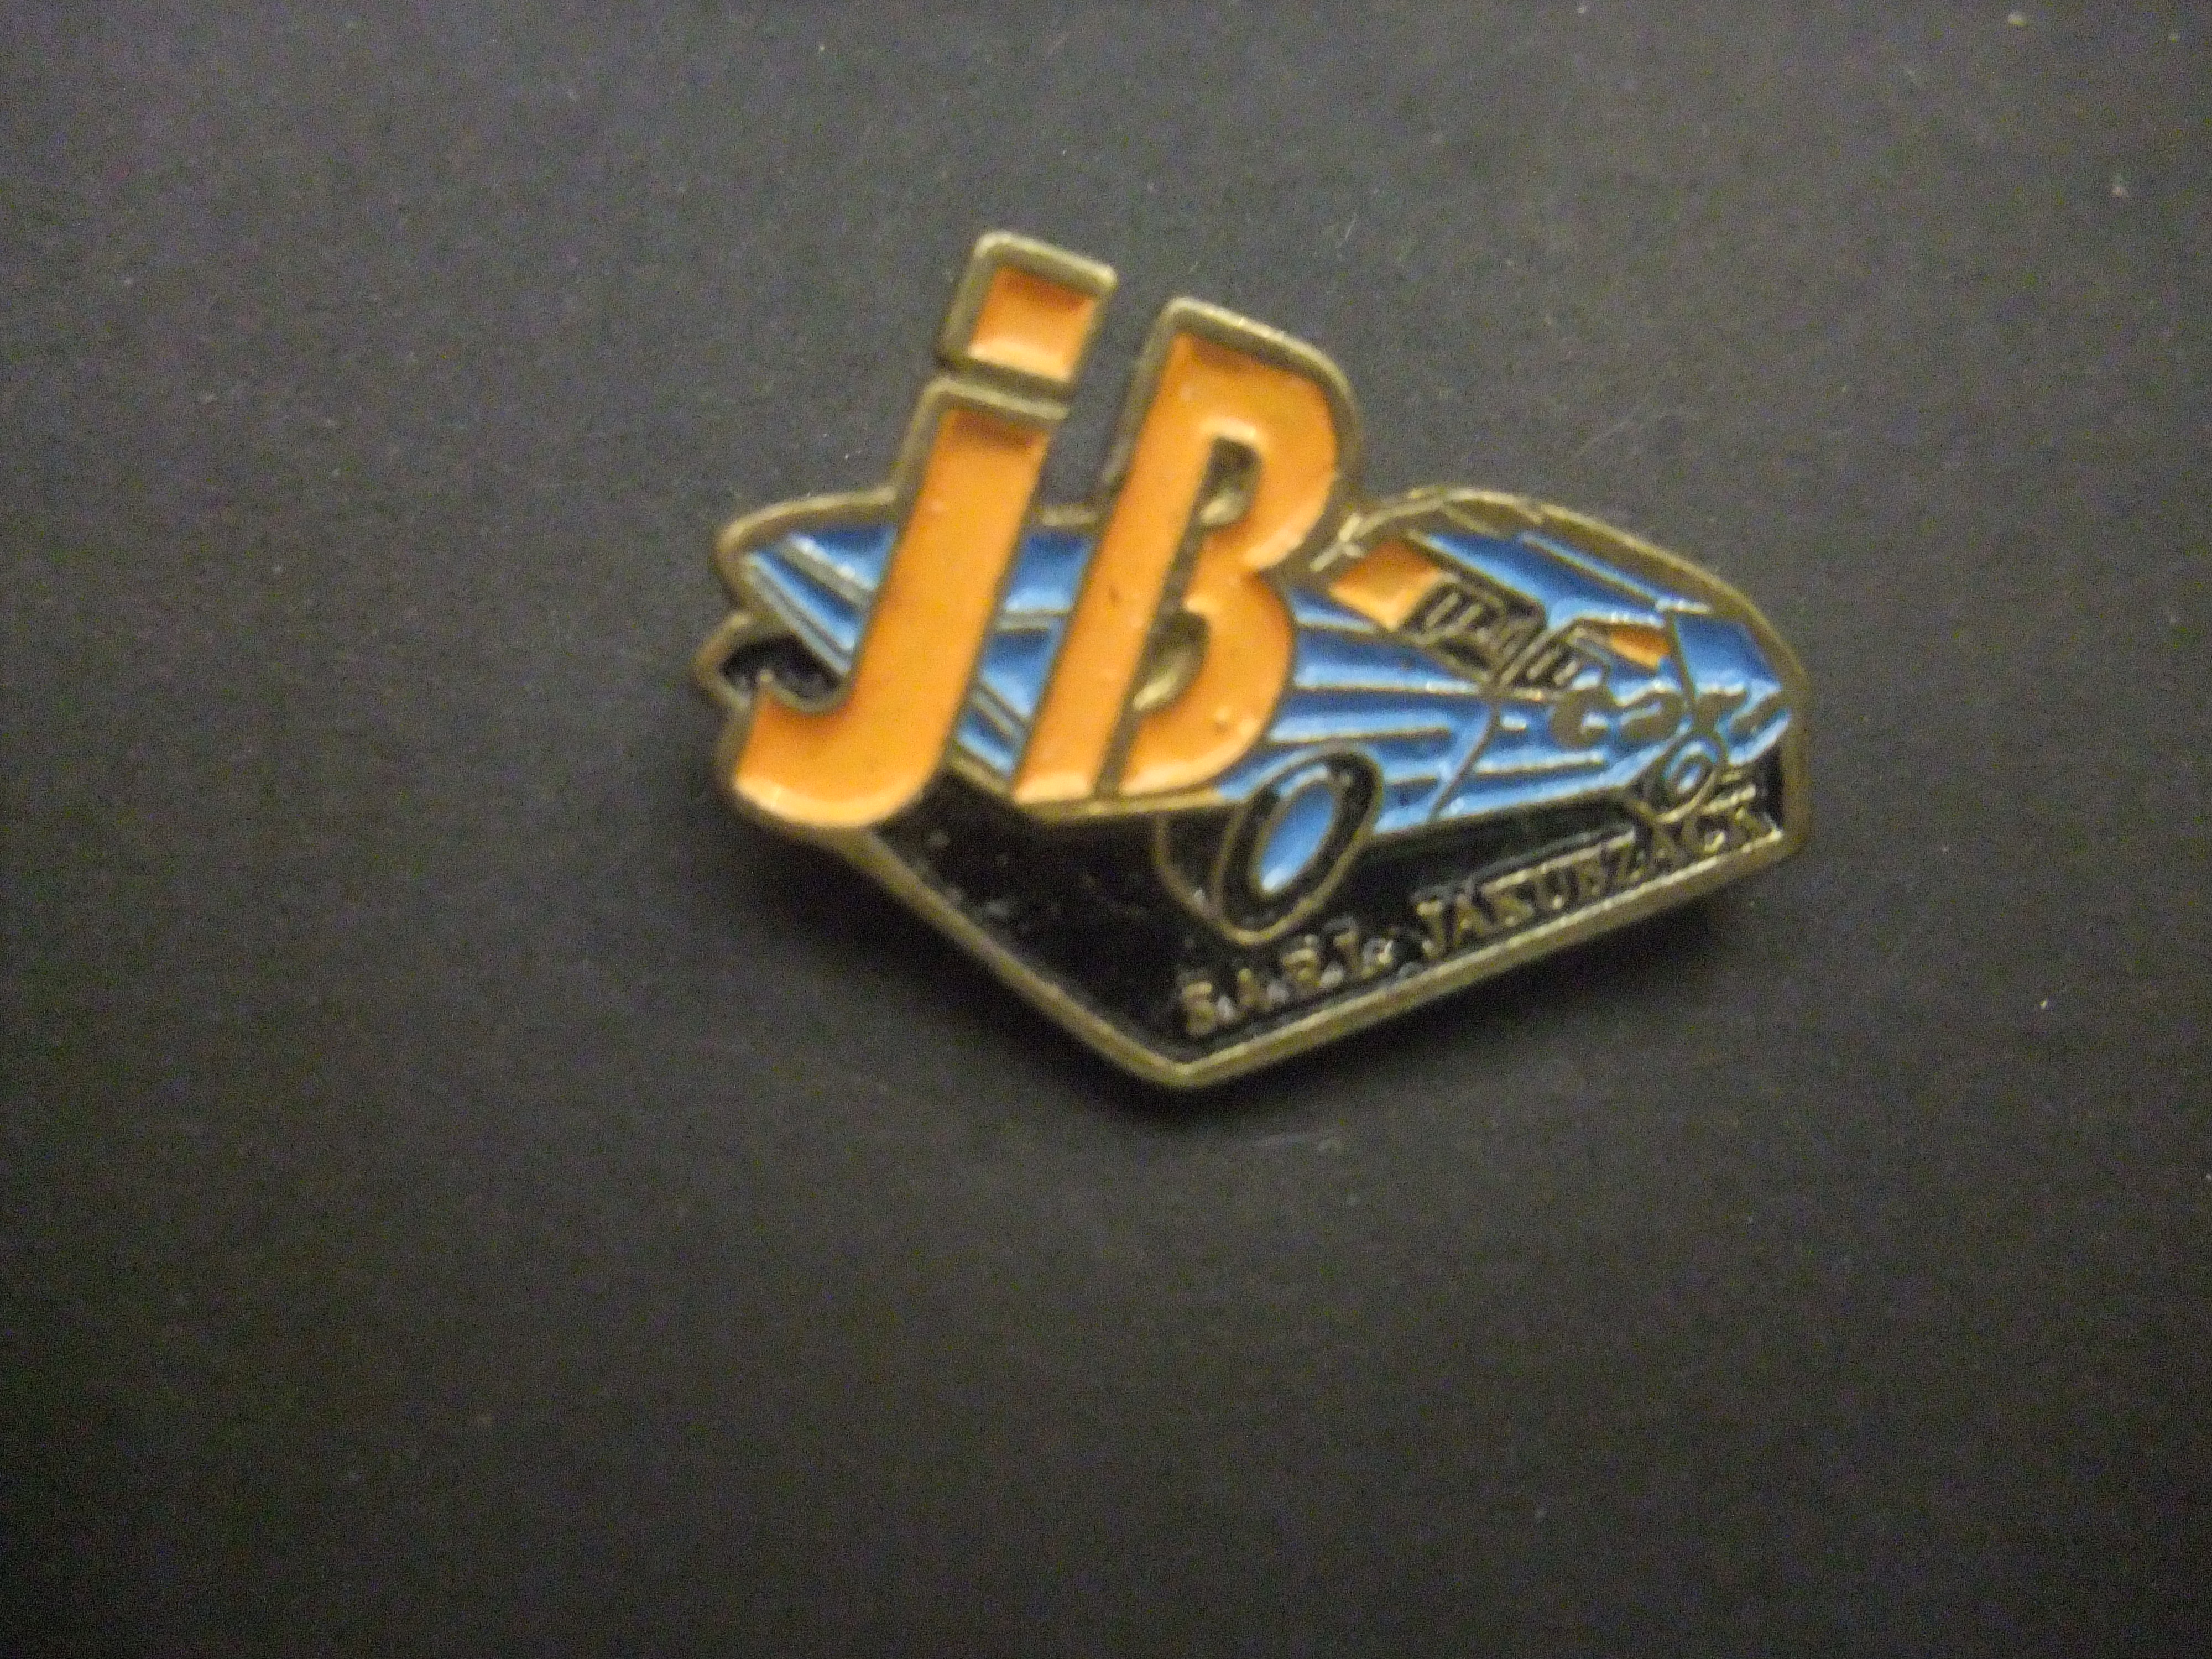 AMC Javelin SST ,) JB sportwagen blauw